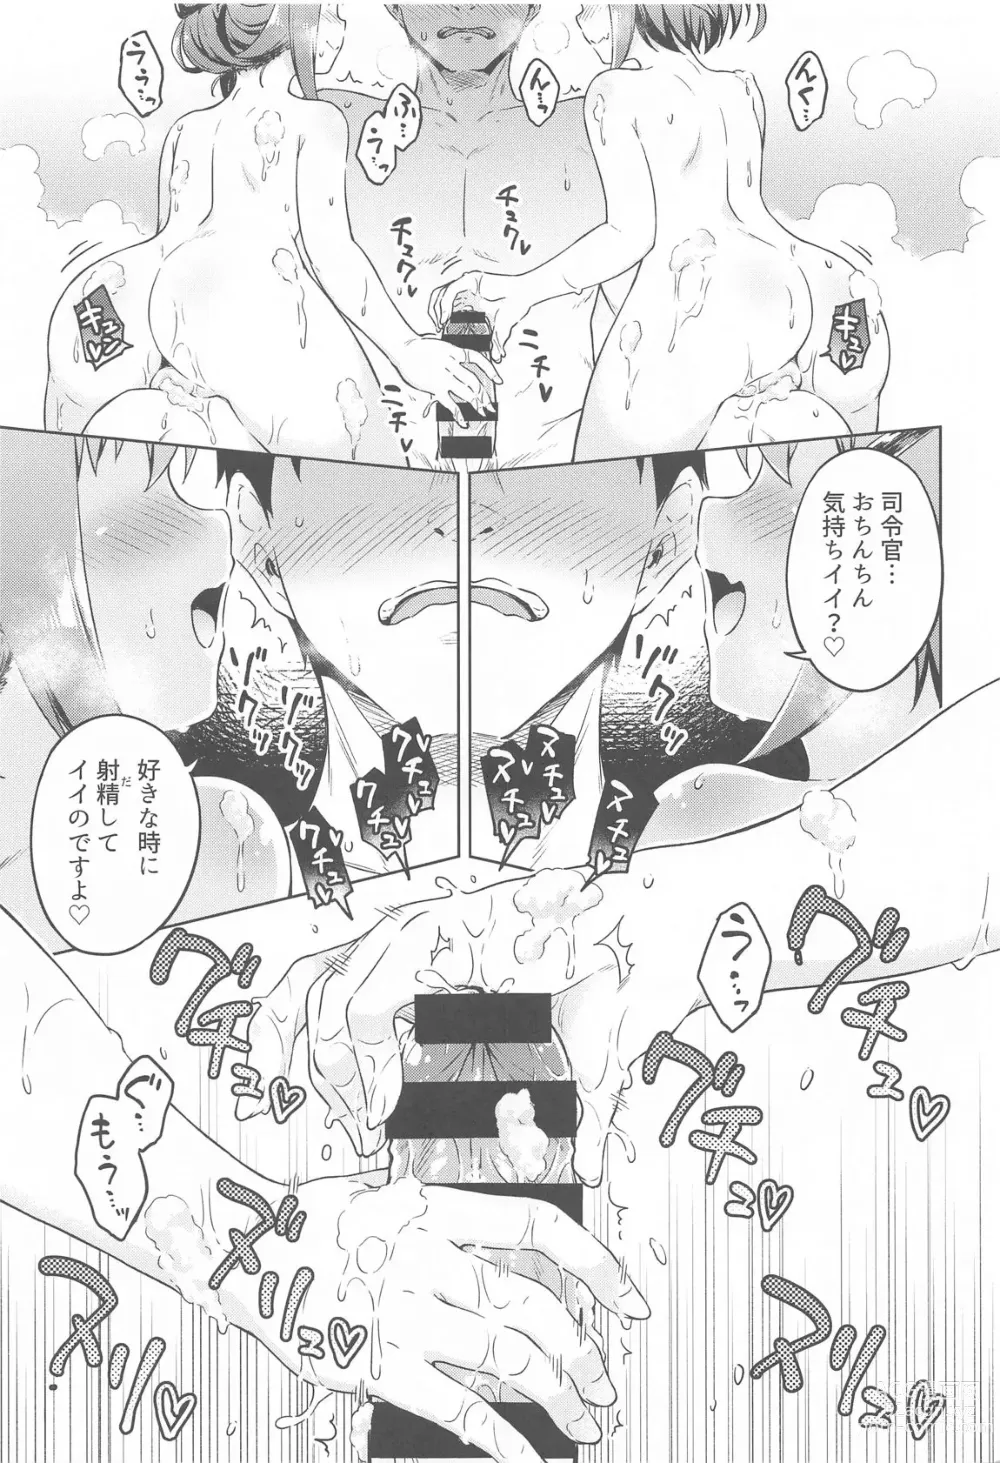 Page 10 of doujinshi Dairoku Refle Ikazuchi Inazuma Awaawa Bath Time